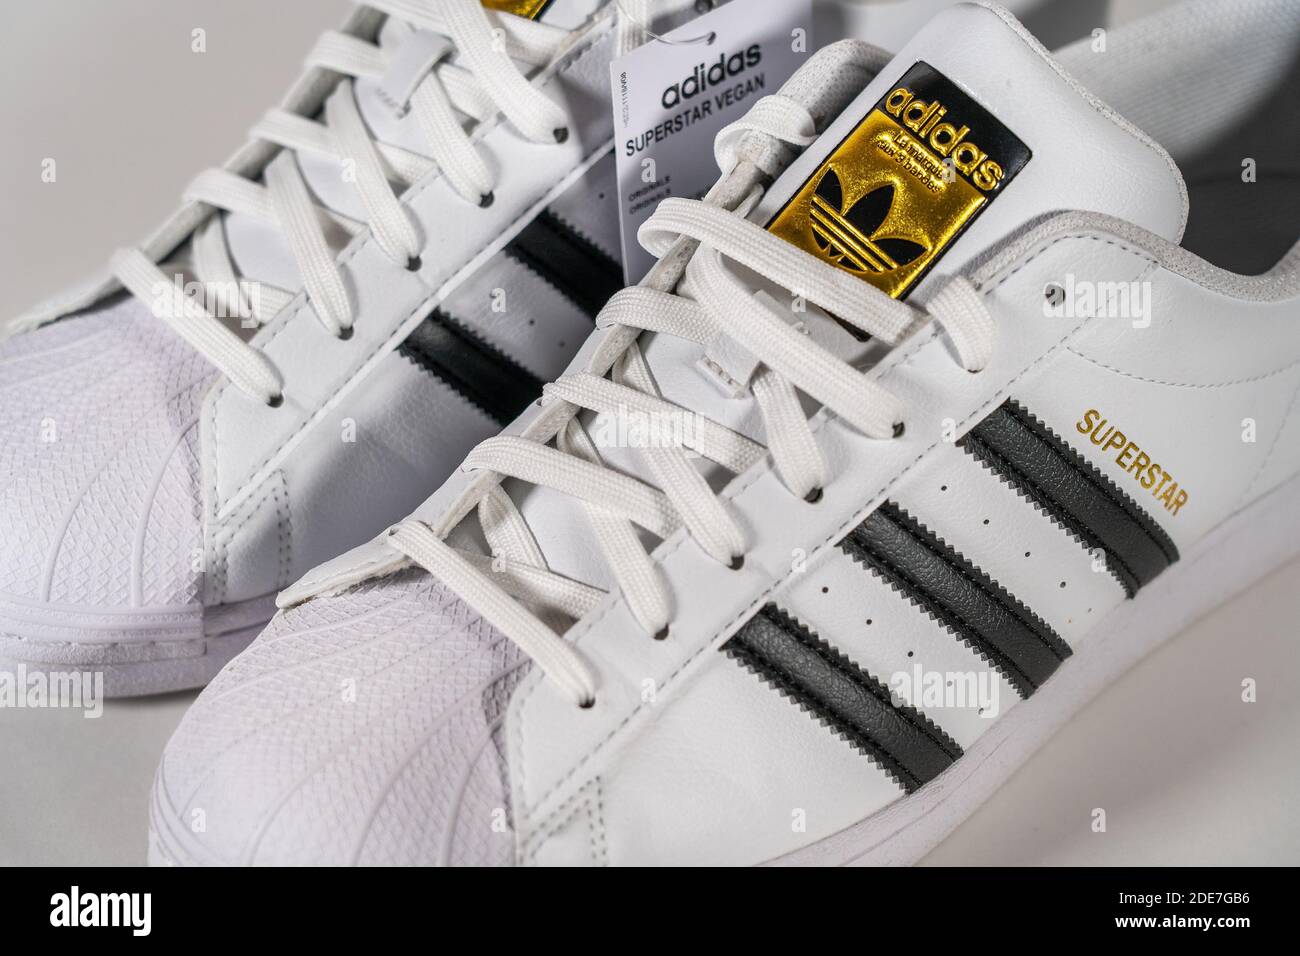 Adidas Superstar - modèle sneaker célèbre produit par le fabricant allemand d'équipements et accessoires de sport Adidas. Chaussures de basket-ball rétro, en production depuis 1969 - Moscou, Russie - novembre 2020. Banque D'Images